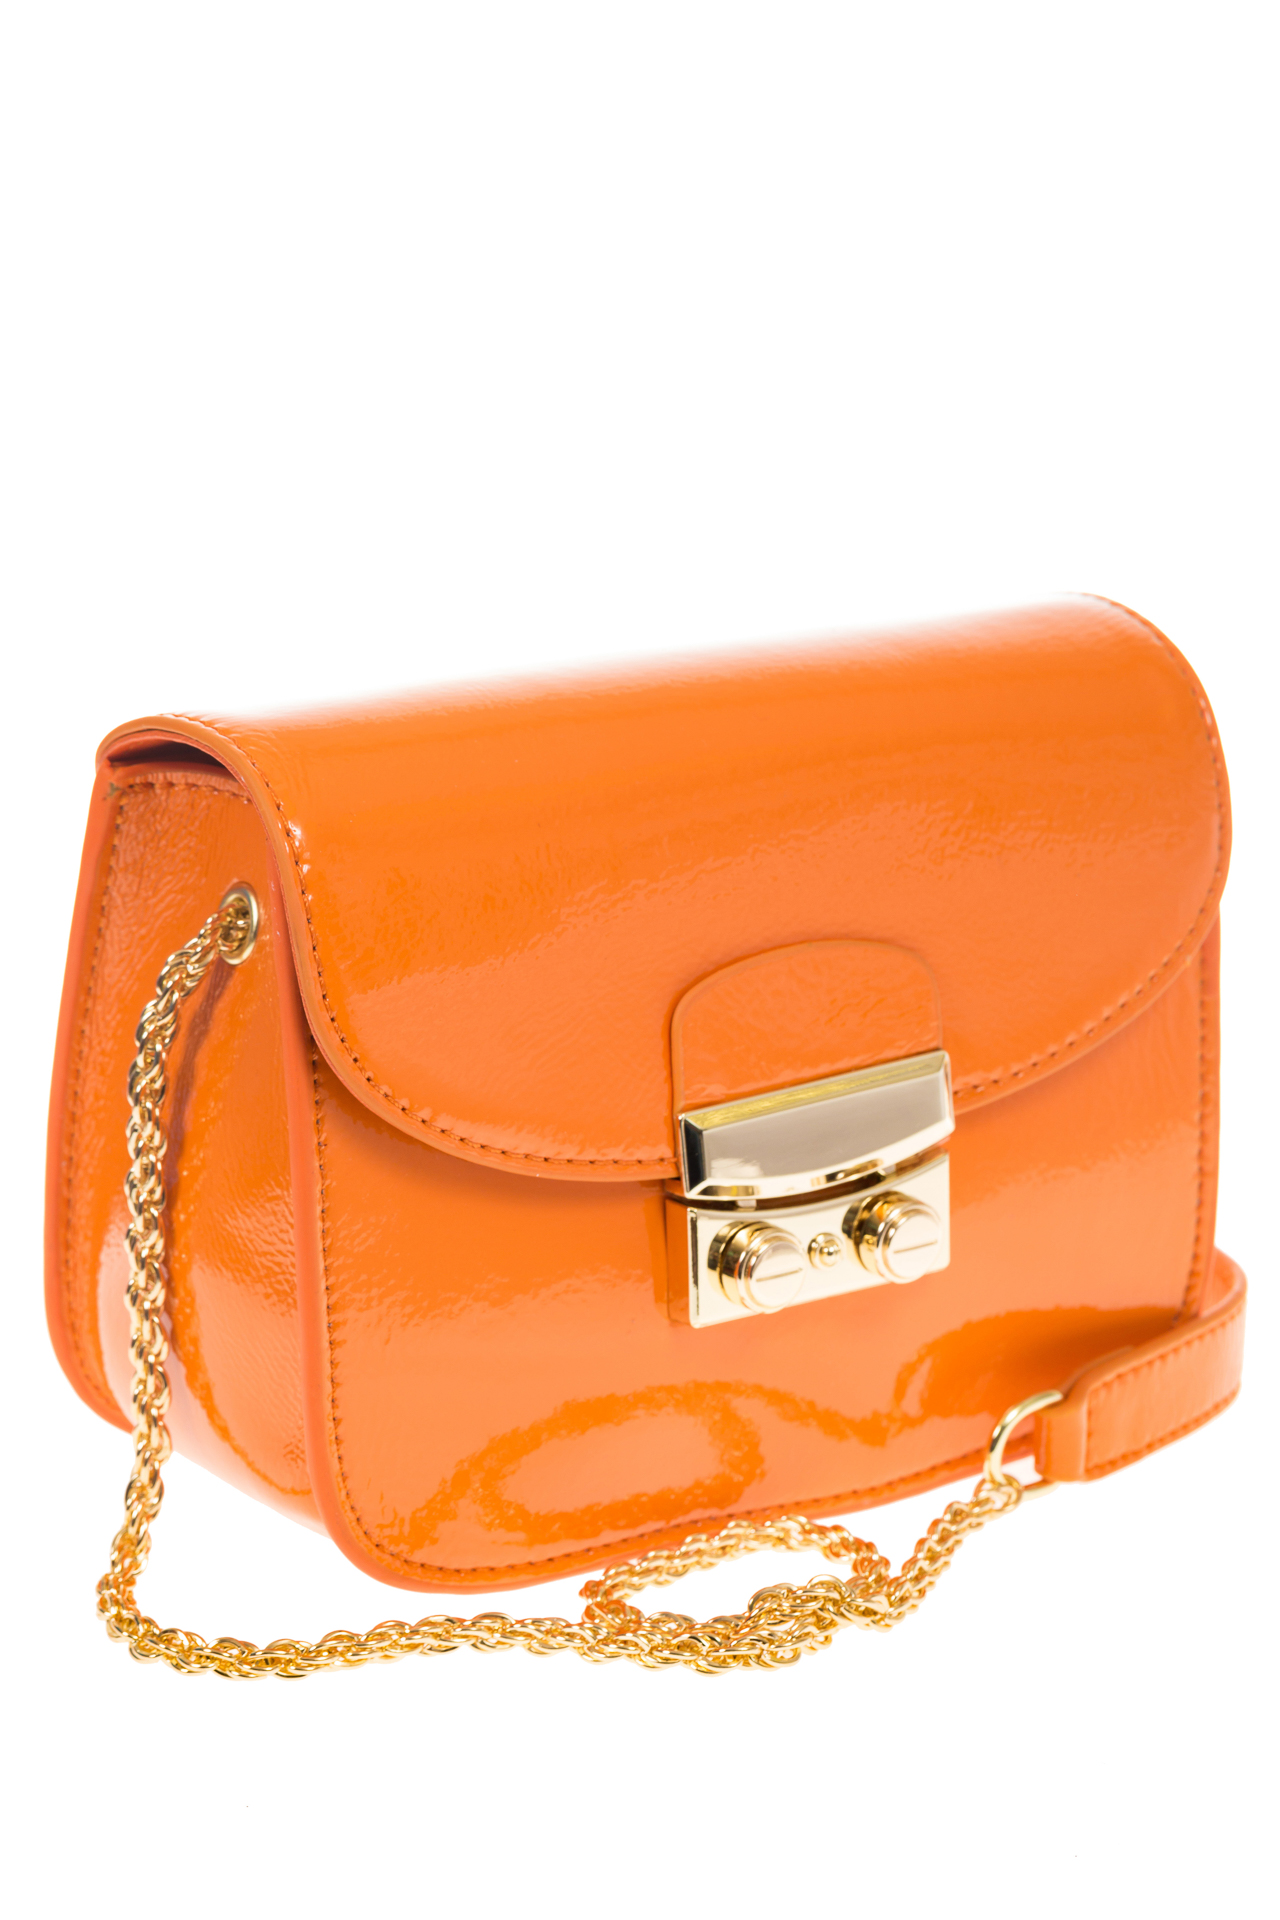 Наплечная сумка с лаковым эффектом цвета манго 8051 на фото